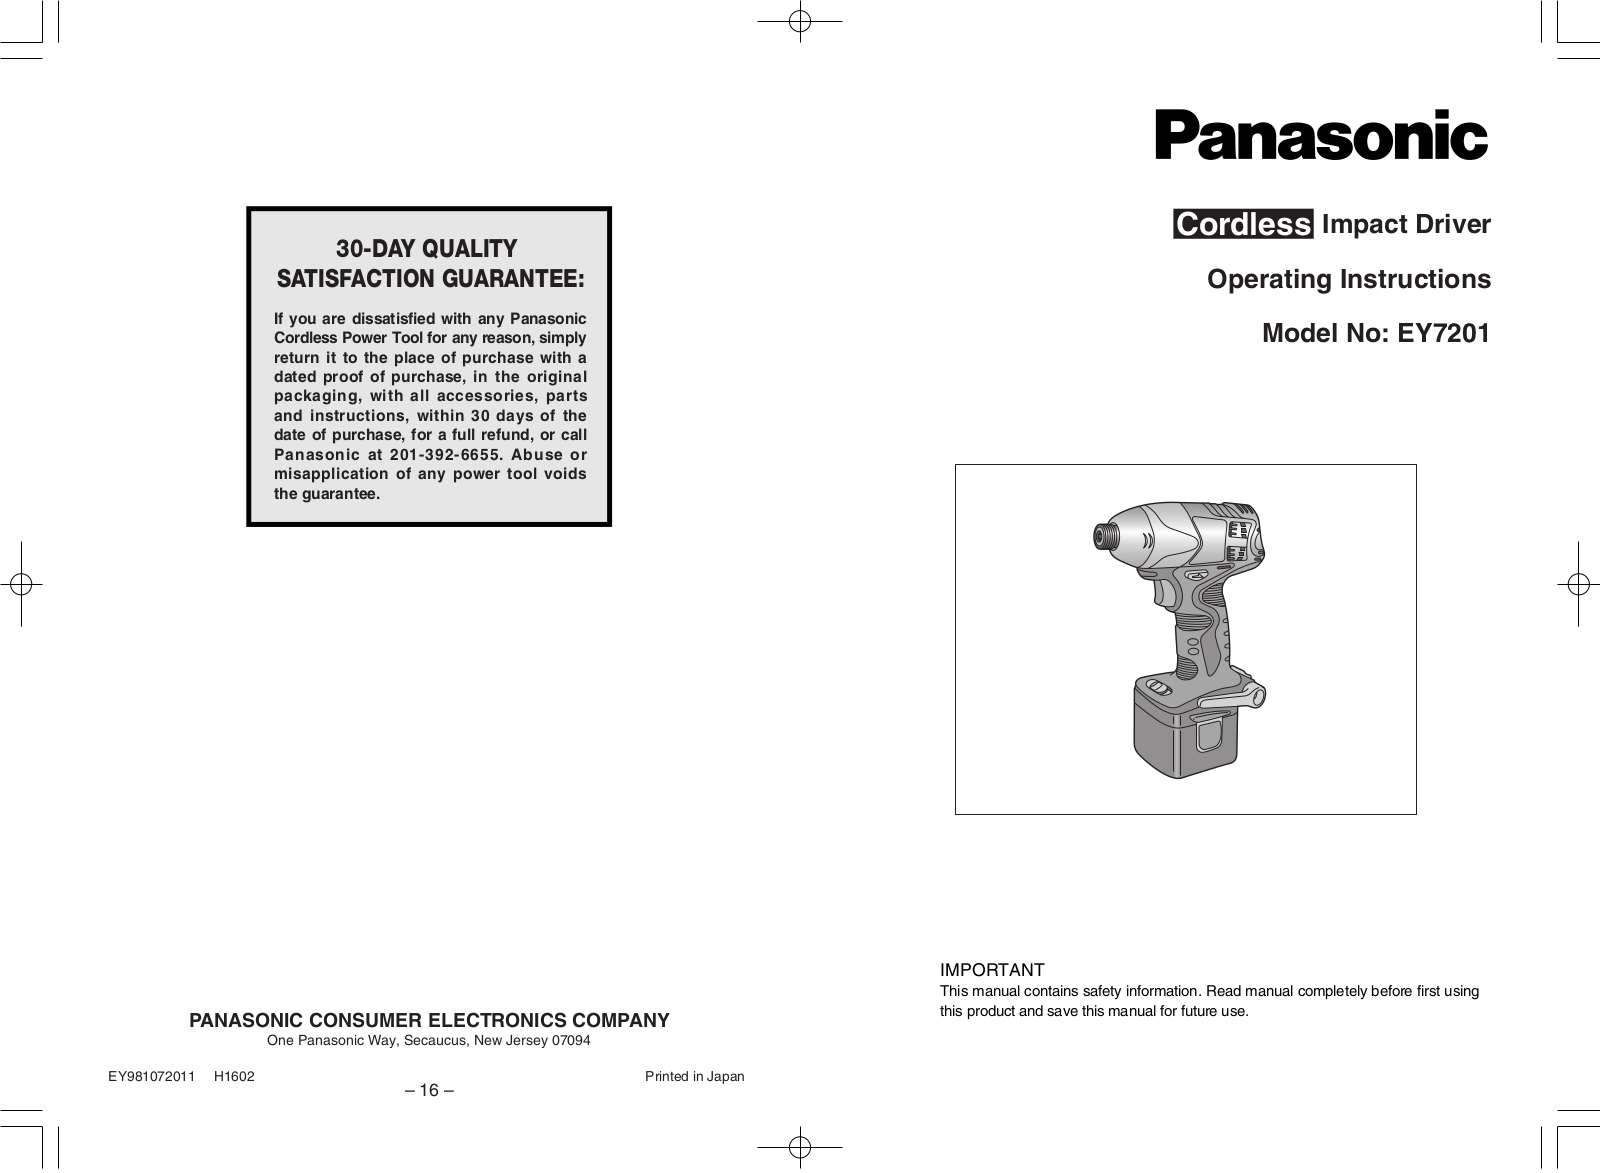 Panasonic ey7201 Operation Manual